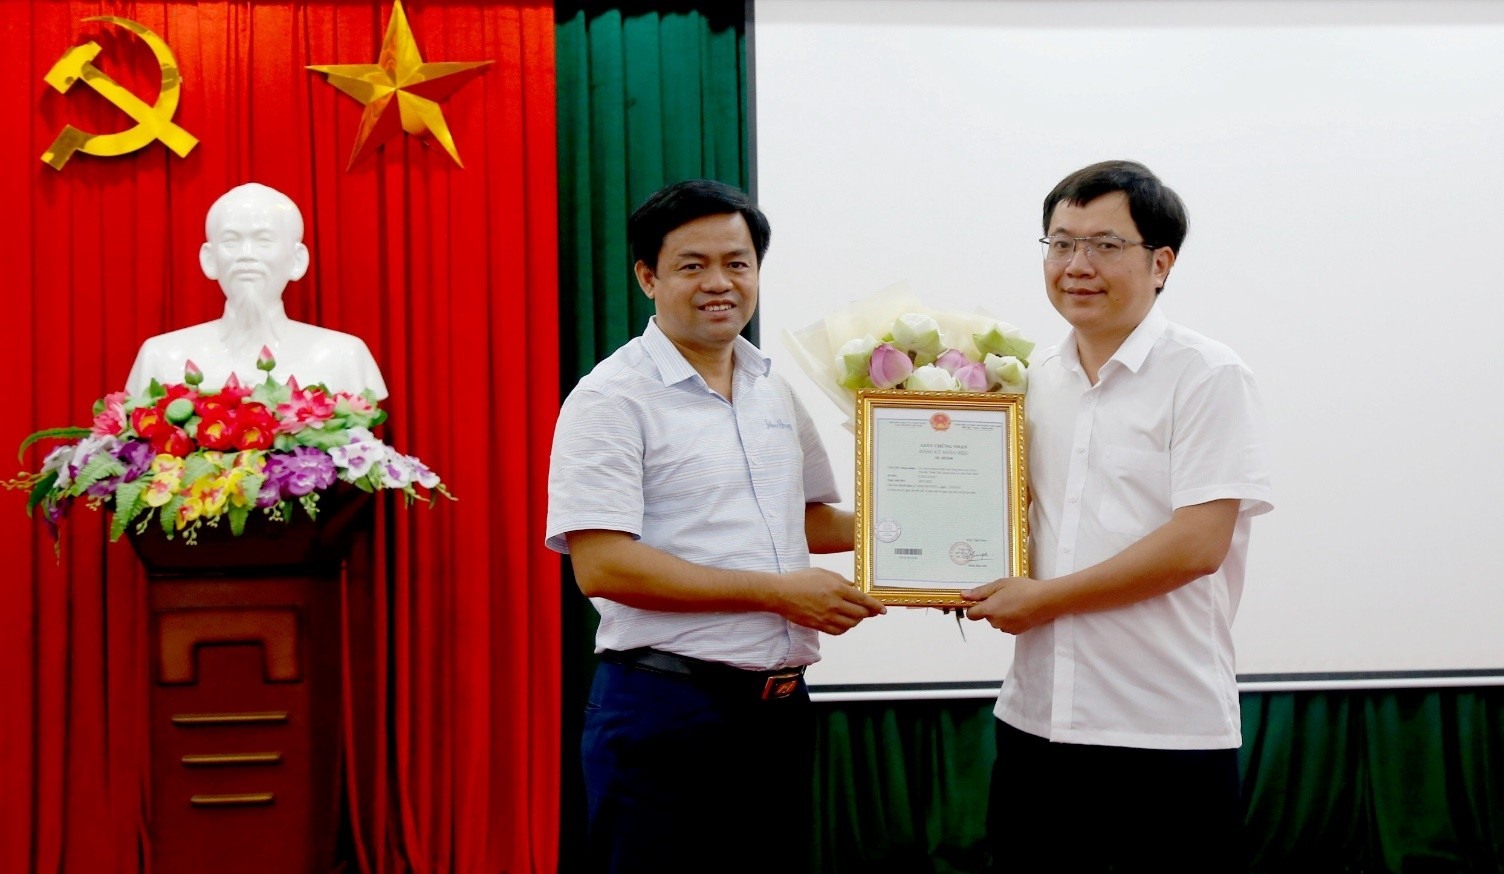 UBND huyện Hoa Lư đón nhận nhãn hiệu chứng nhận “Sen Hoa Lư - Ninh Bình“. Ảnh: Diệu Anh